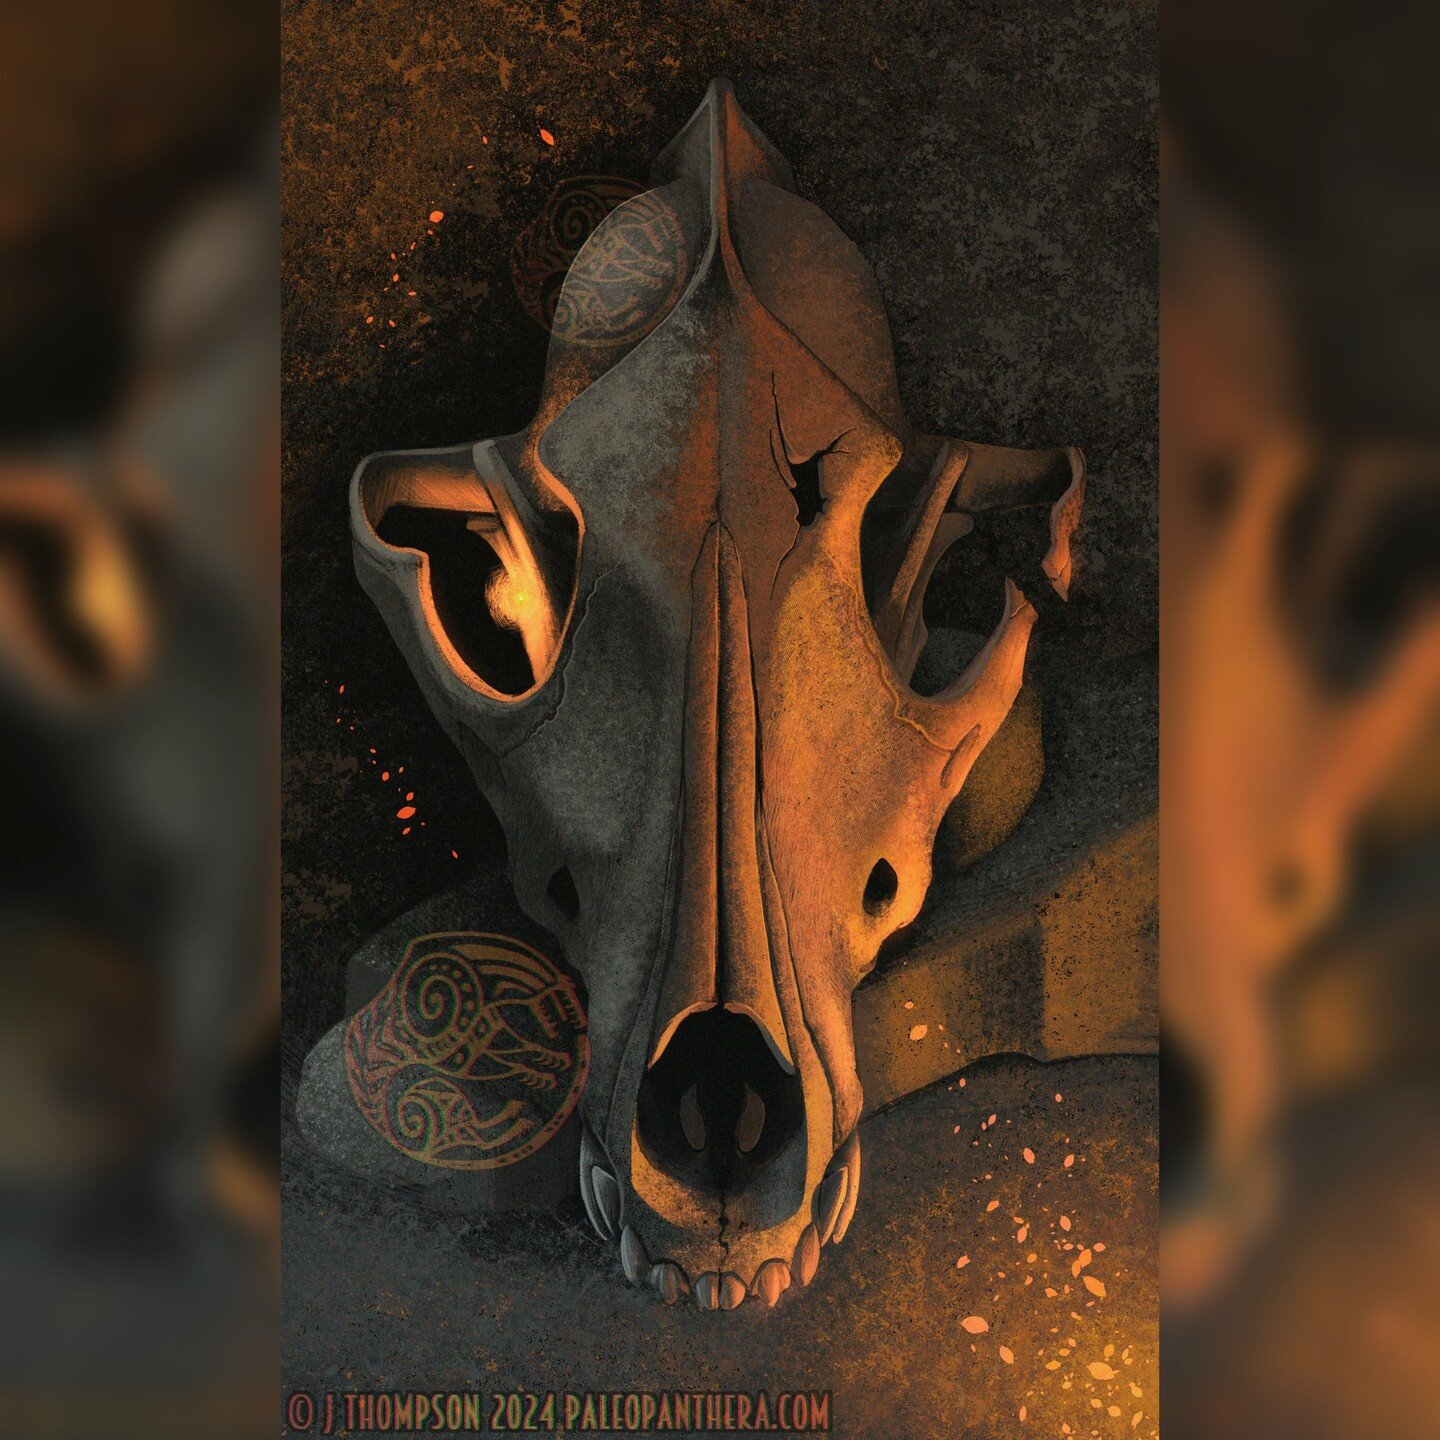 The pleistocene wolf skull card from my maybe-maybe-not oracle deck. #art #skull #oracle #tarot #palaeosinensisart #oracledeck #oraclecards #skulls #wolf #wolves #wolfskull #pagan #strega #mori #pleistocene #digitalart #illustration #glow #painting